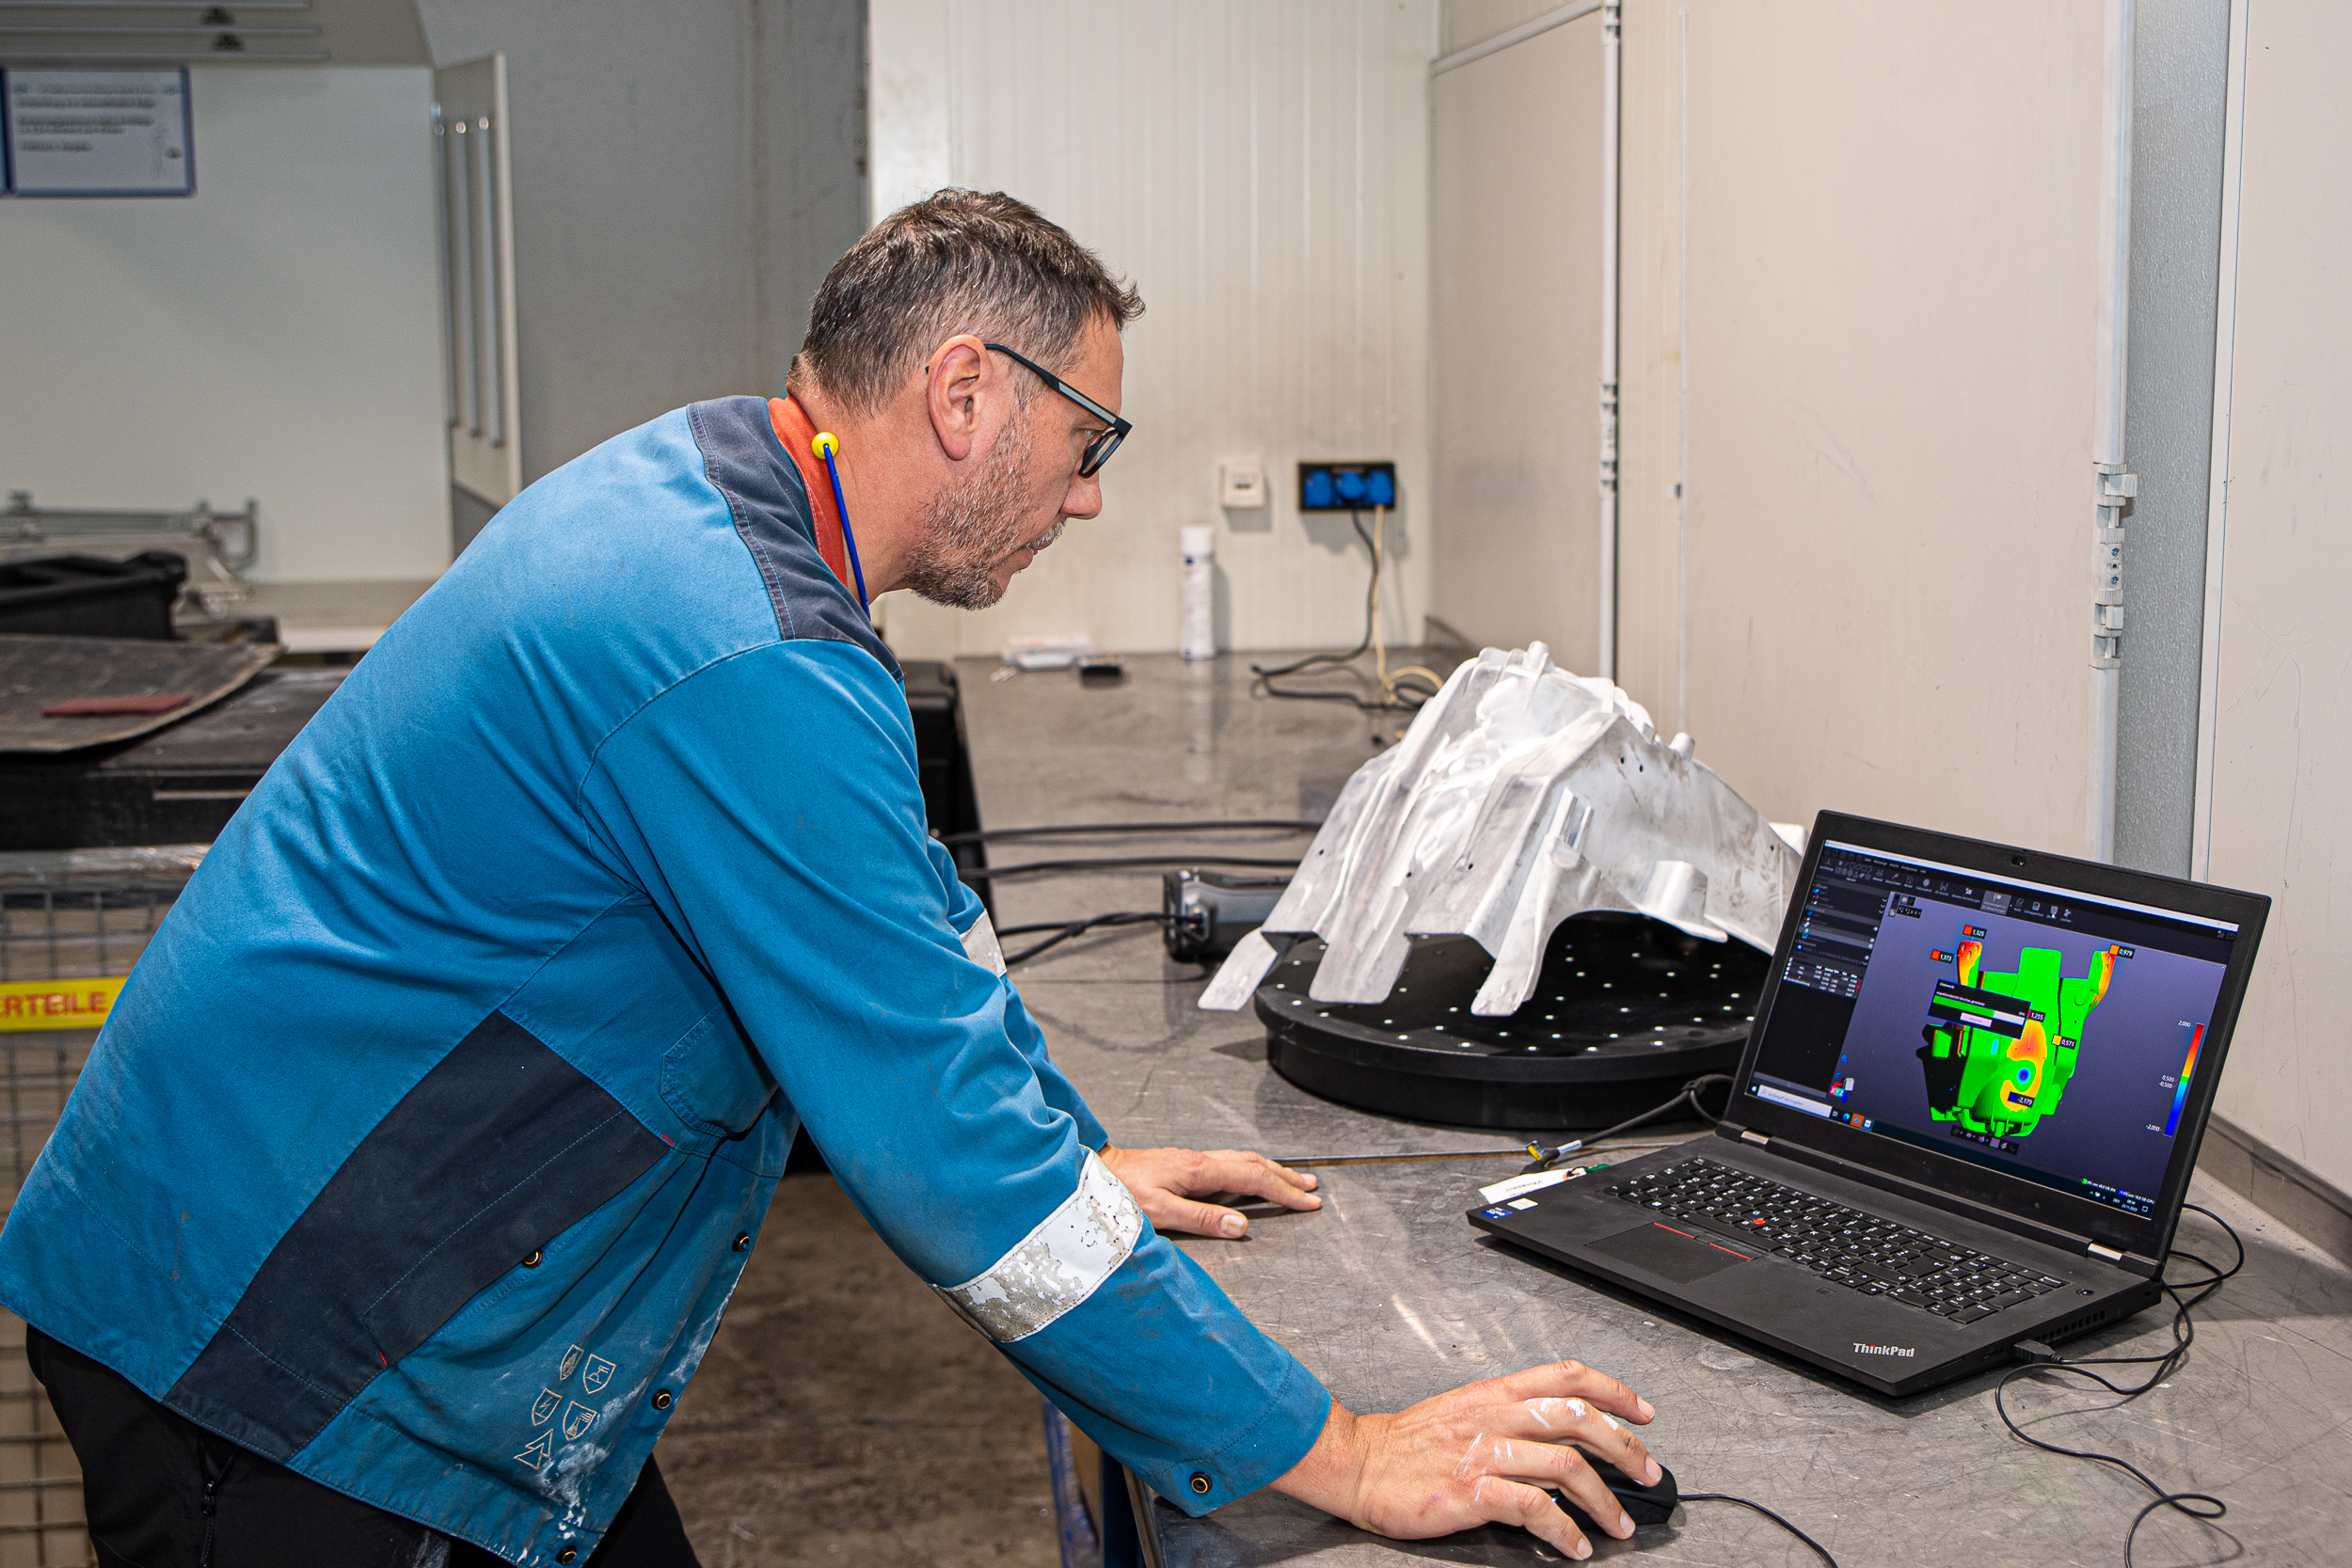 Un empleado de GF Casting observa el componente escaneado del software VXinspect en una computadora portátil. Se puede ver una comparación de CAD con el mapa de colores.